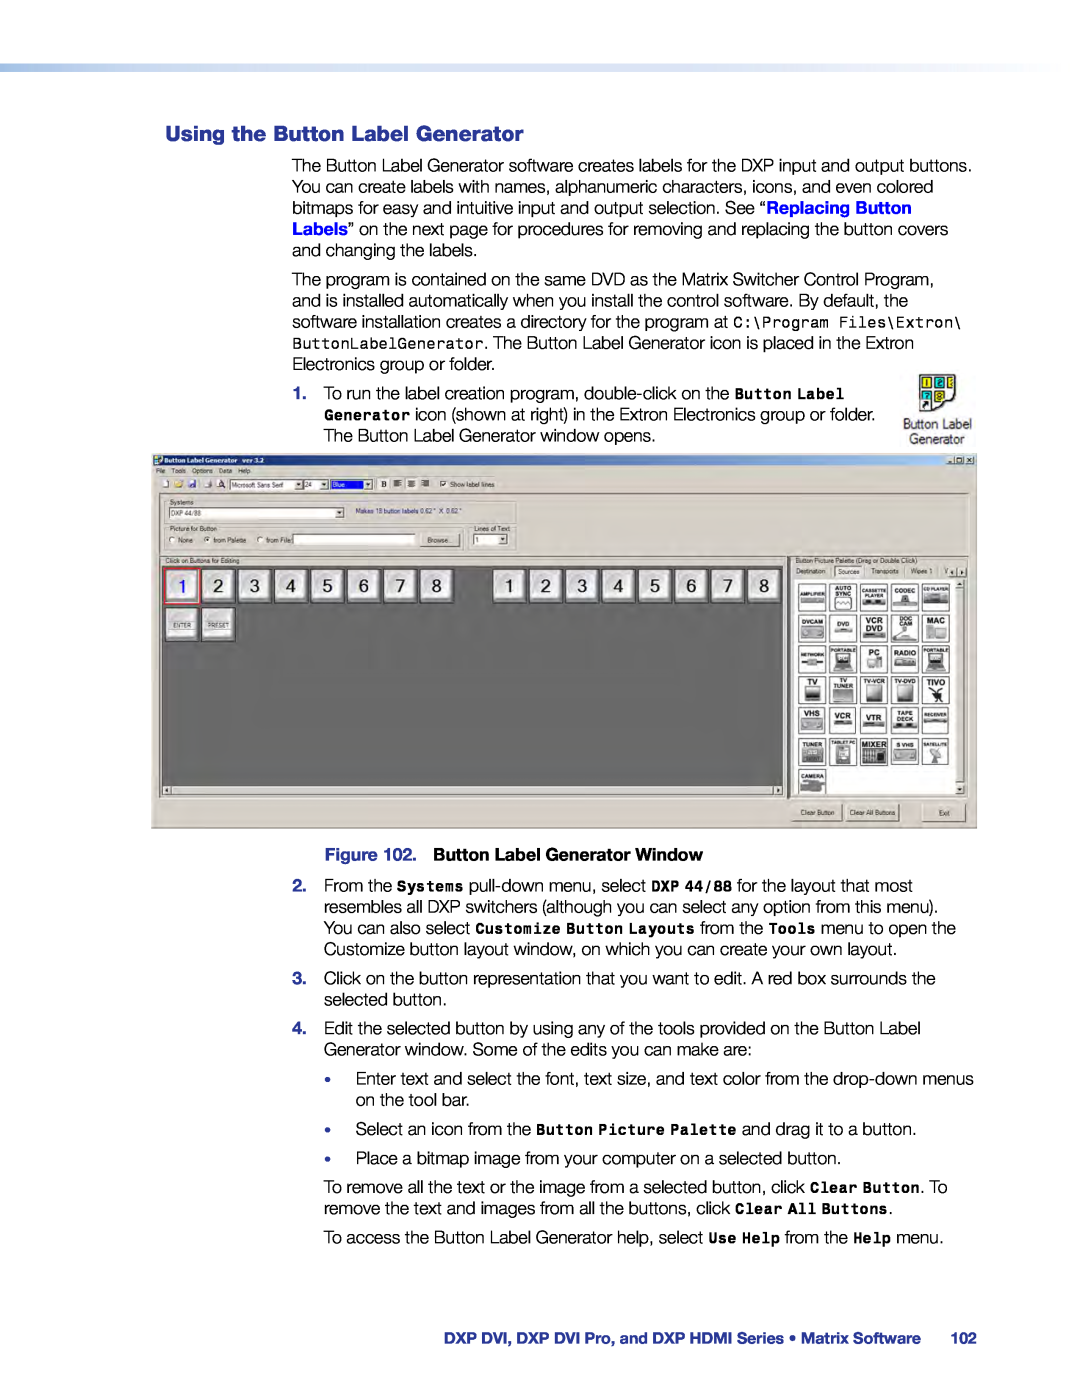 Extron electronic DXP DVI PRO manual Using the Button Label Generator, Button Label Generator Window 